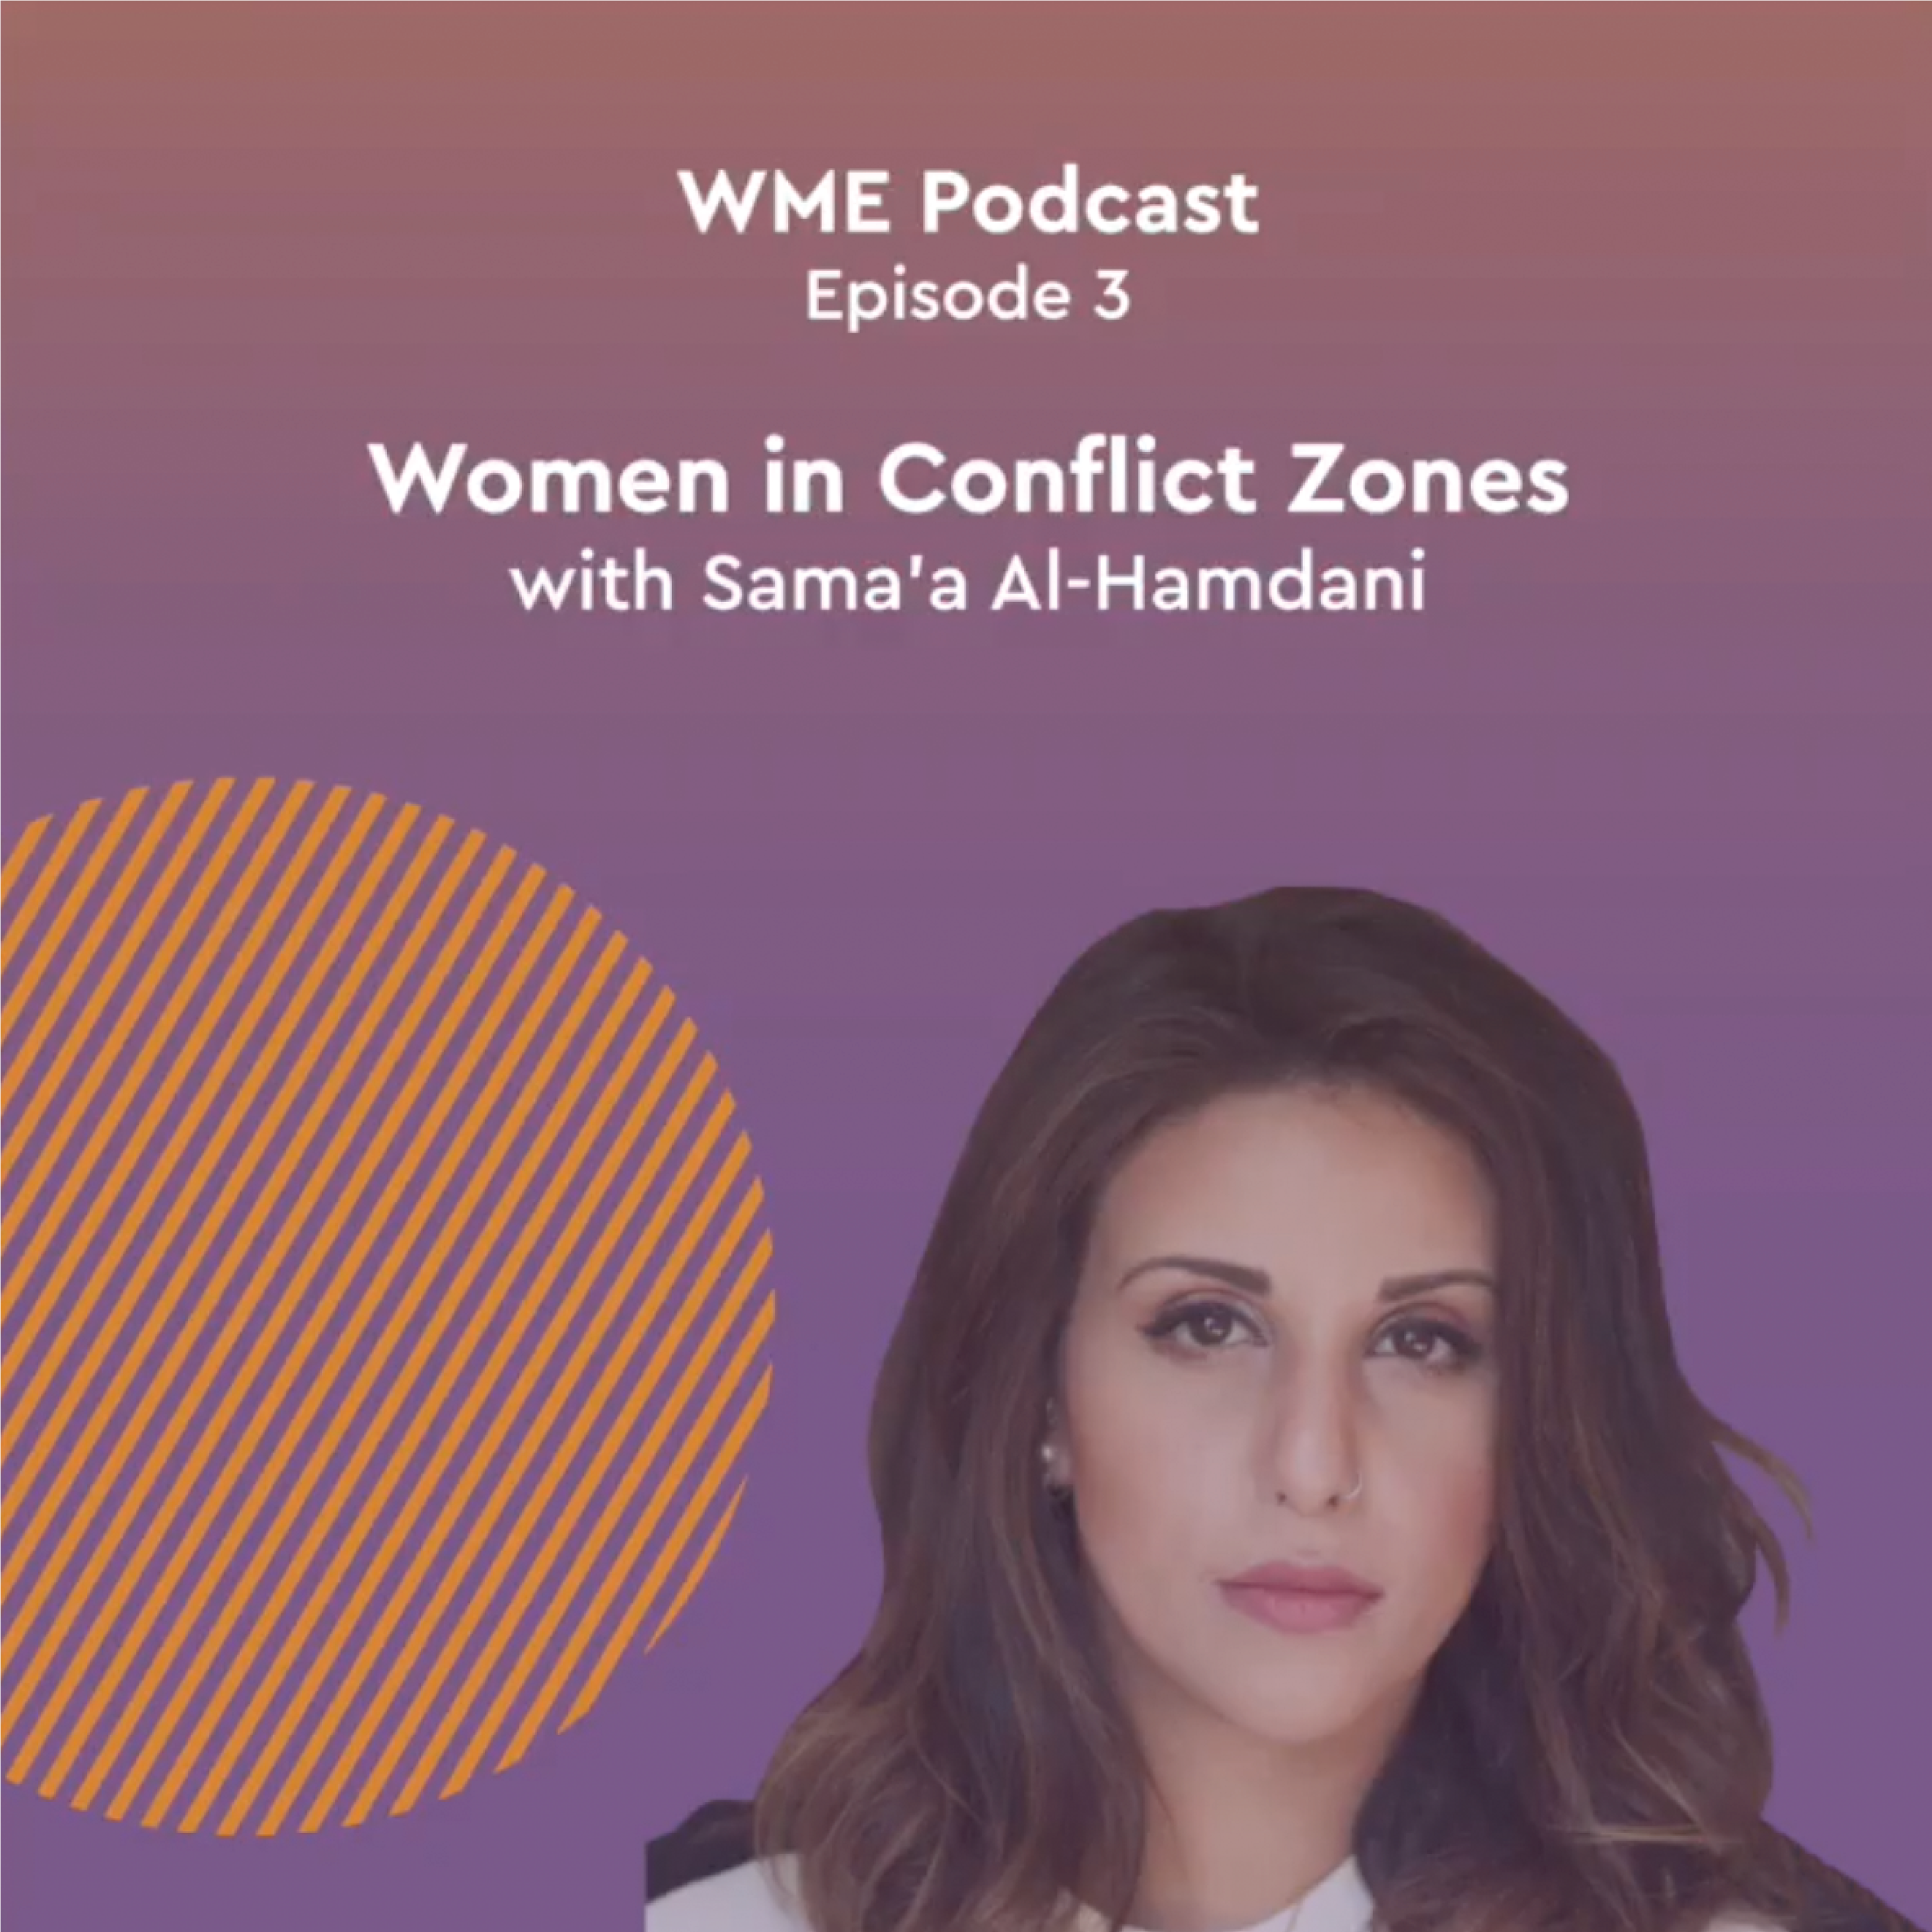 Episode 3: Women in Conflict Zones with Sama'a Al-Hamdani